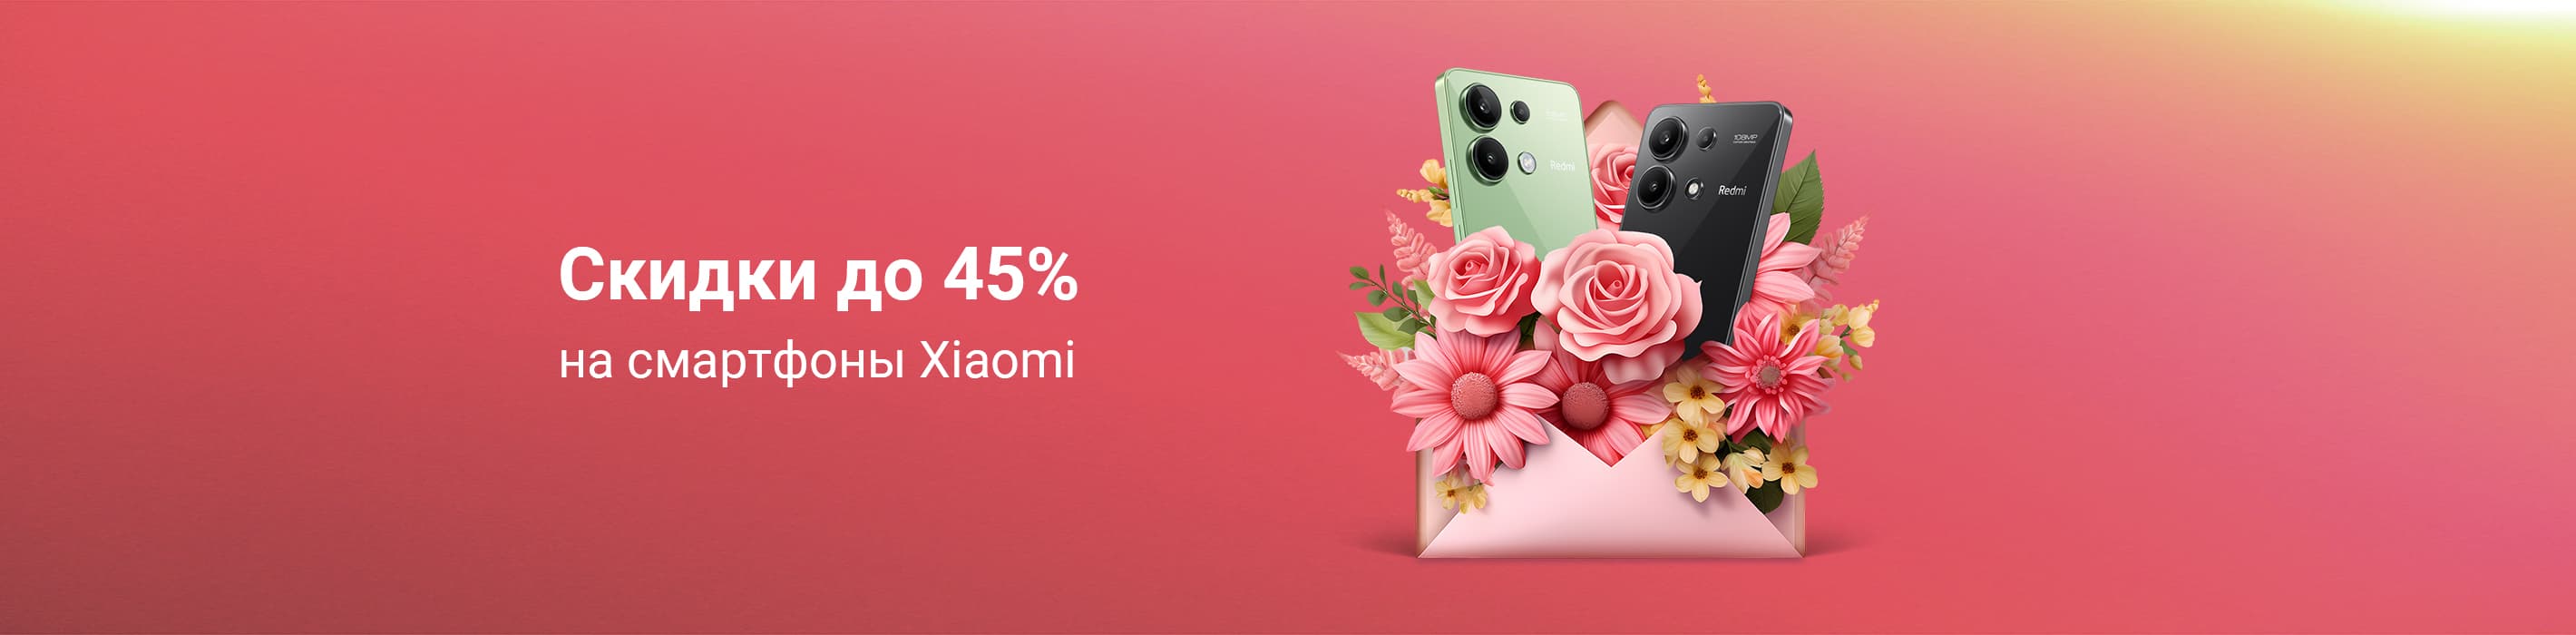 Скидки до 45% на смартфоны Xiaomi